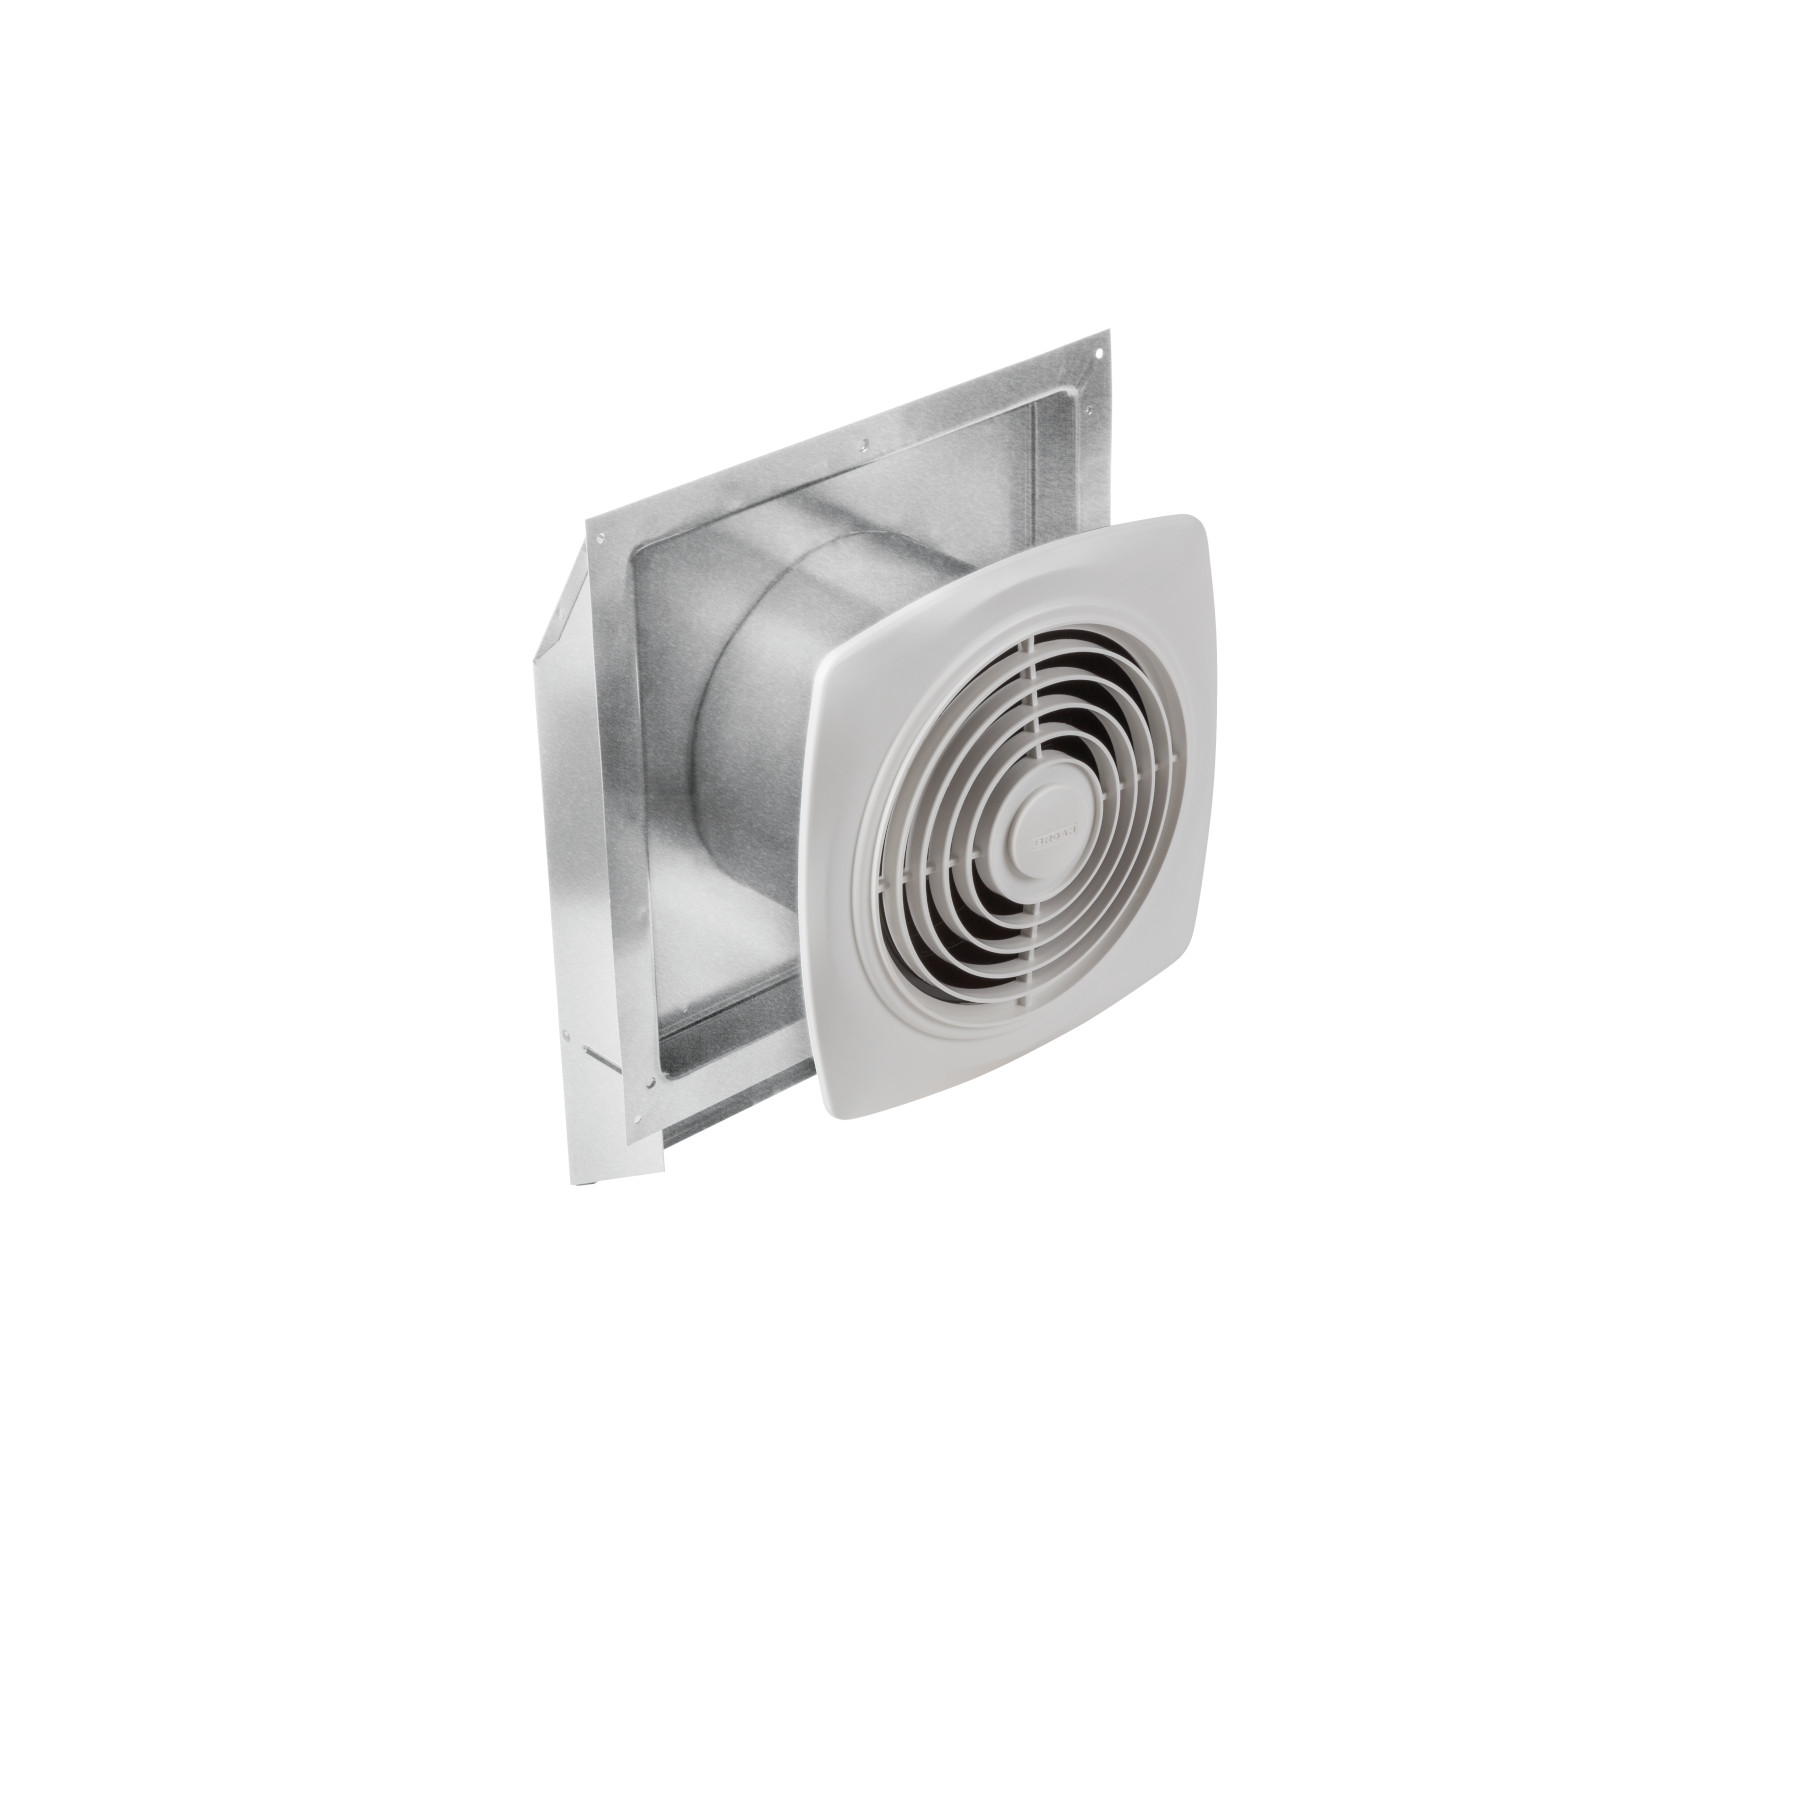 Broan® 200 CFM Through-Wall Ventilation Fan